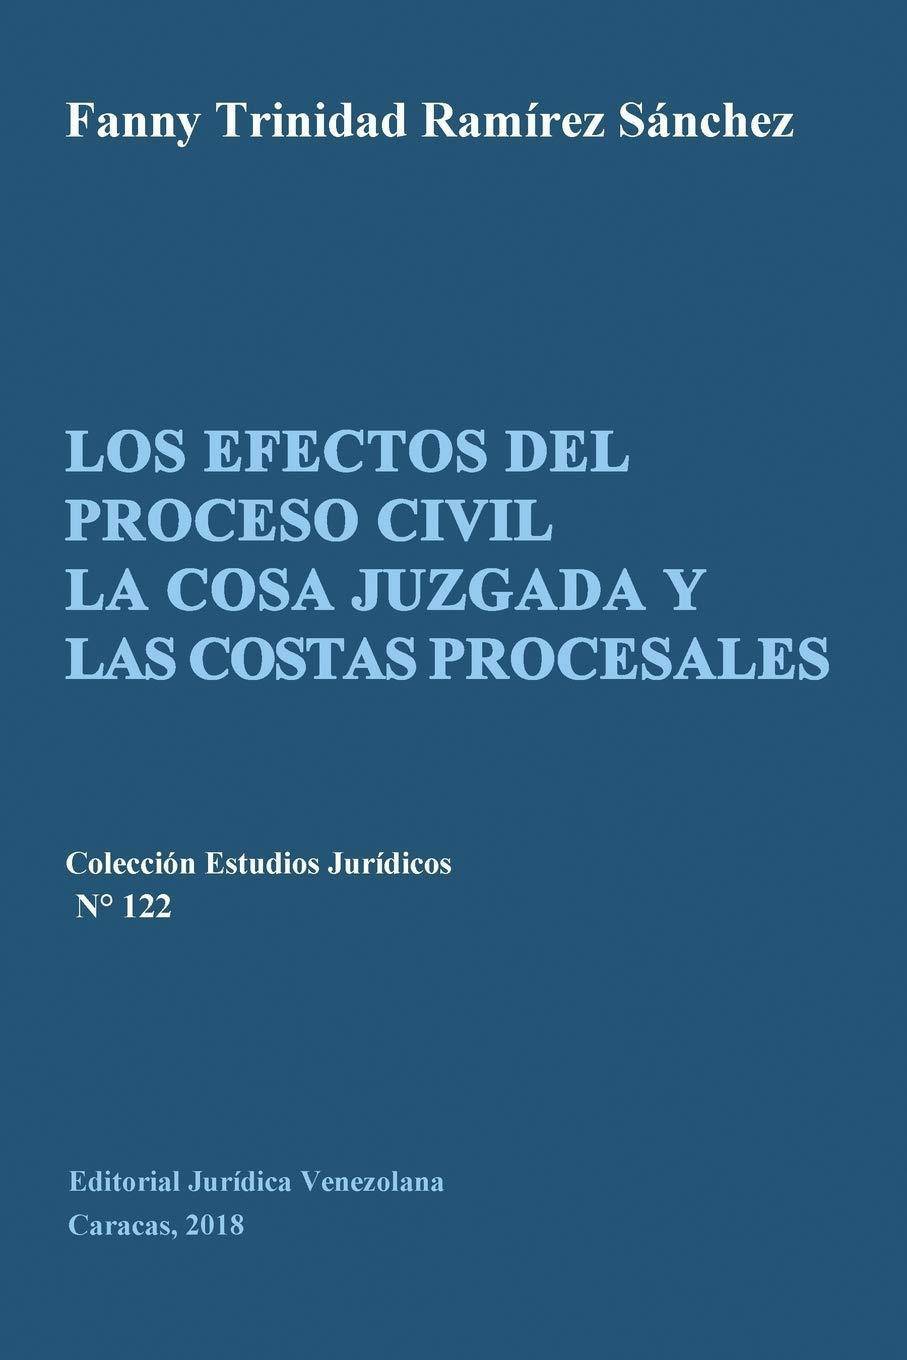 LOS EFECTOS DEL PROCESO CIVIL LA COSA JUZGADA Y LAS COSTAS PROCESALES - SureShot Books Publishing LLC